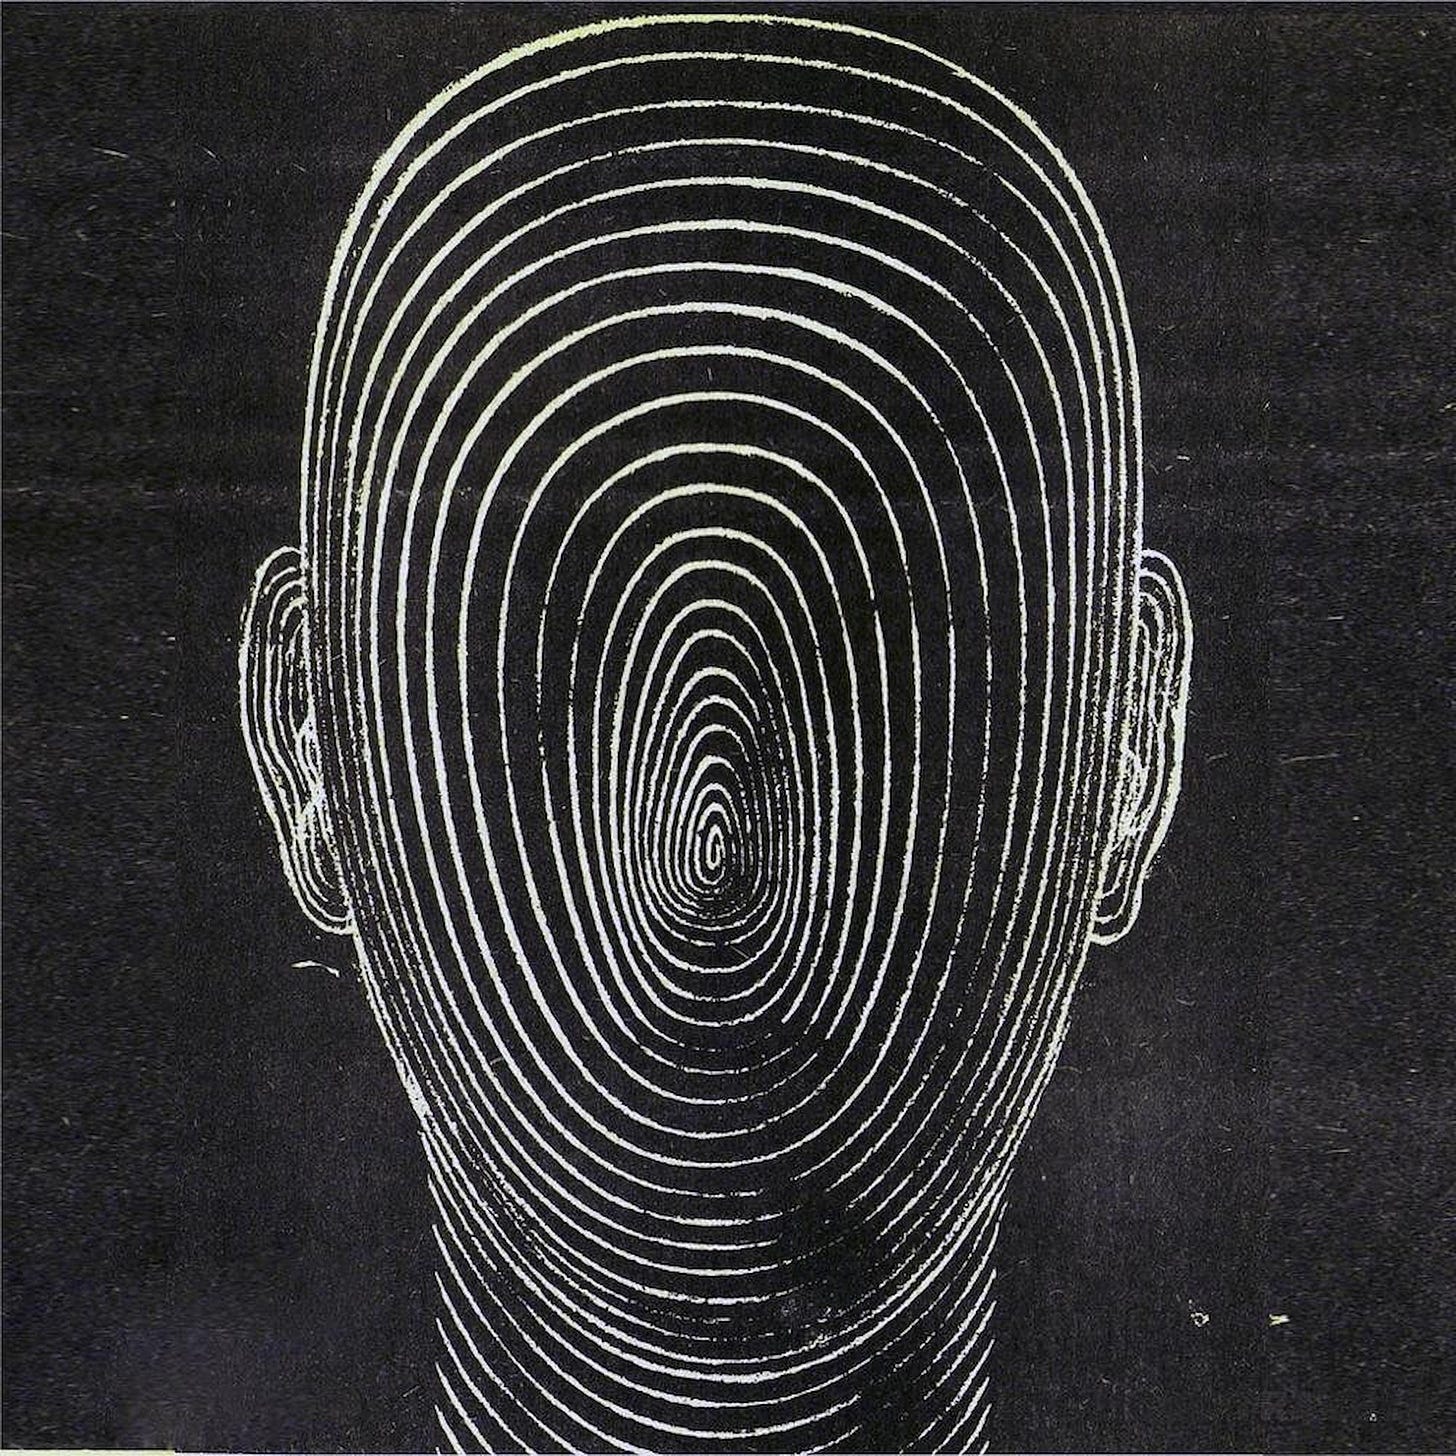 Spiral head by Pavel Tchelitchew